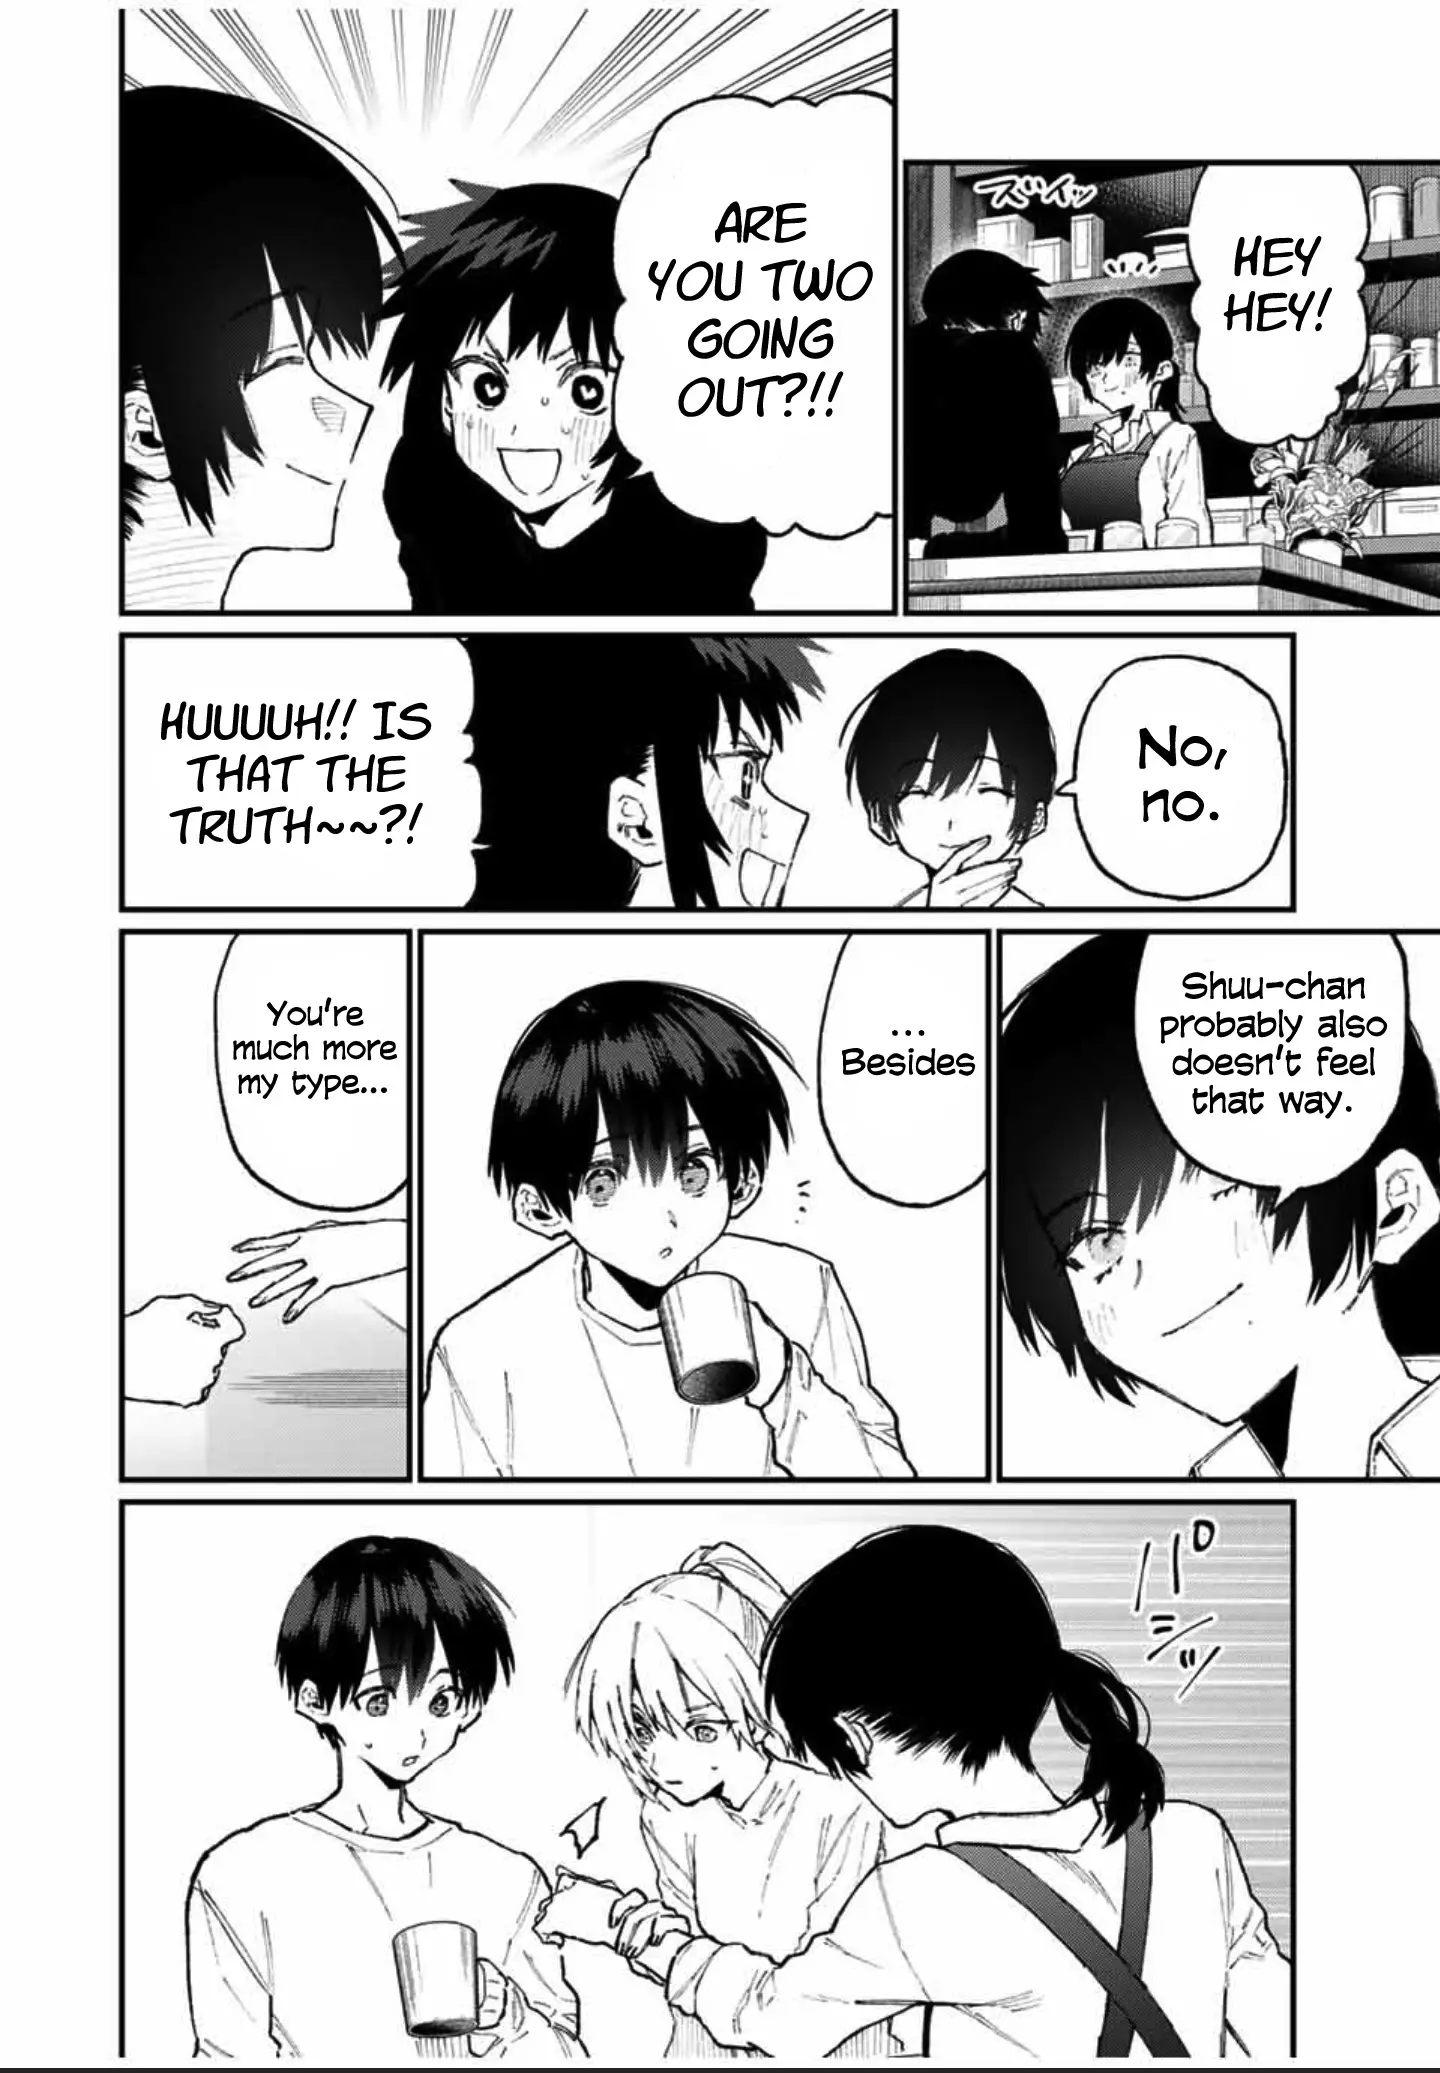 Shikimori's Not Just A Cutie - 79 page 9